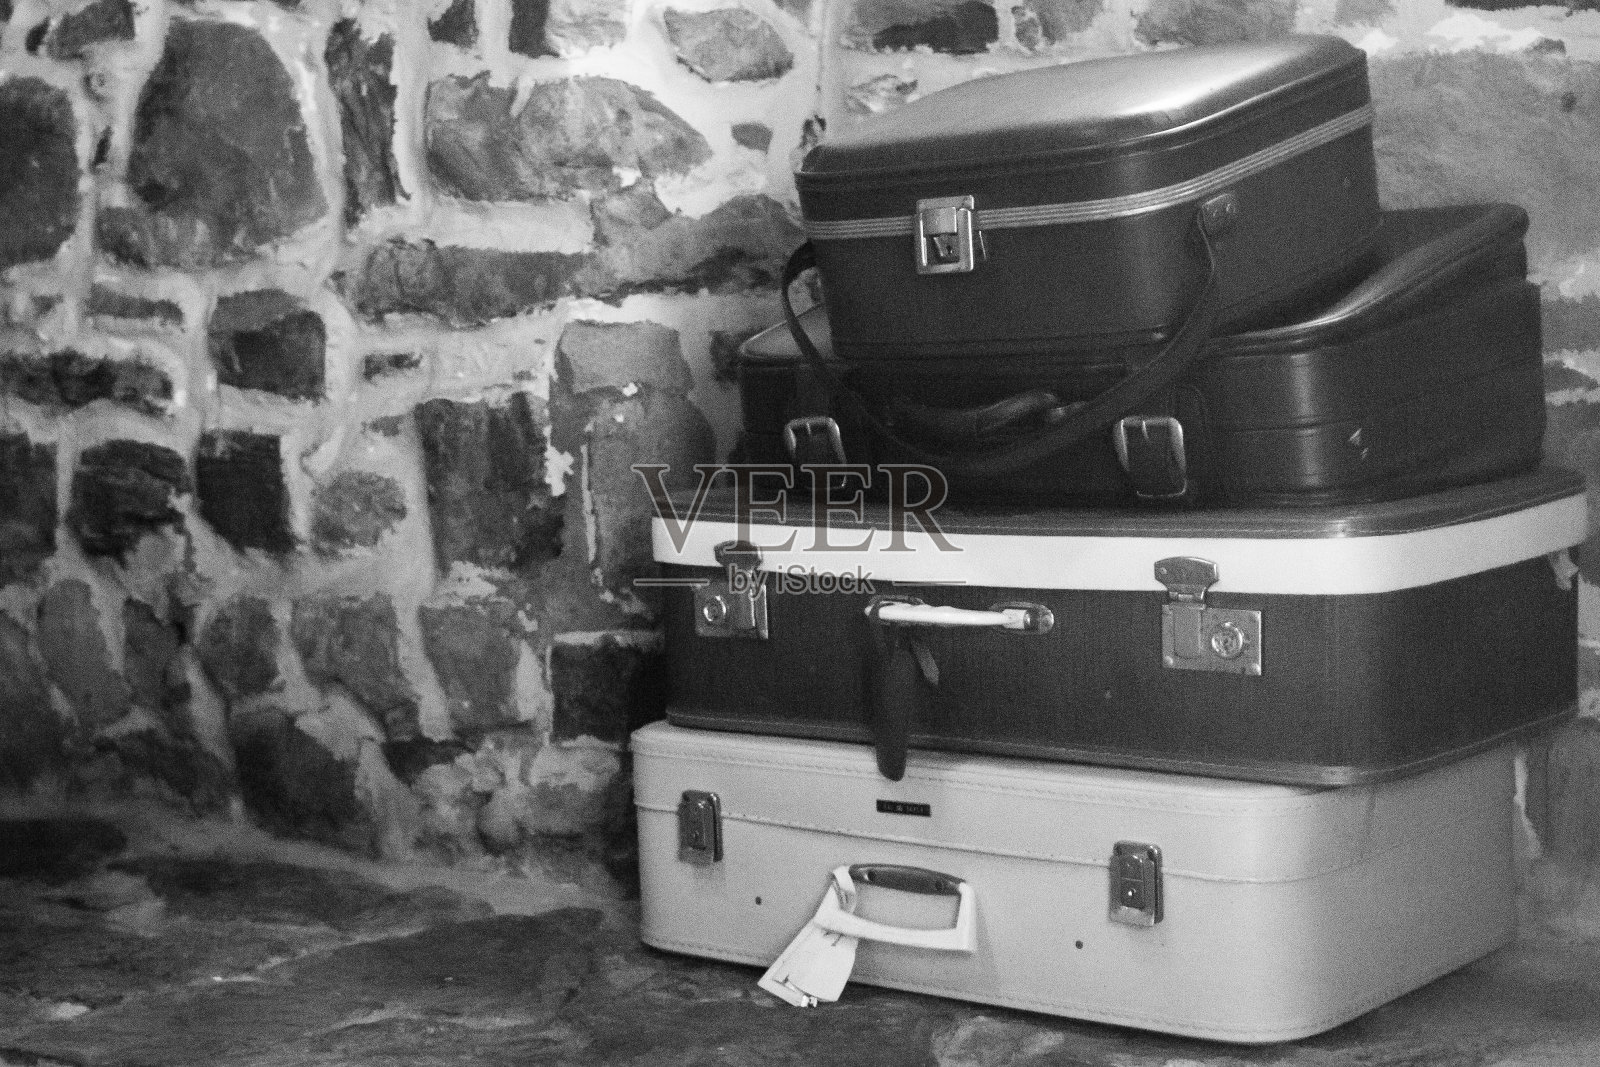 四个复古风格的手提箱照片摄影图片